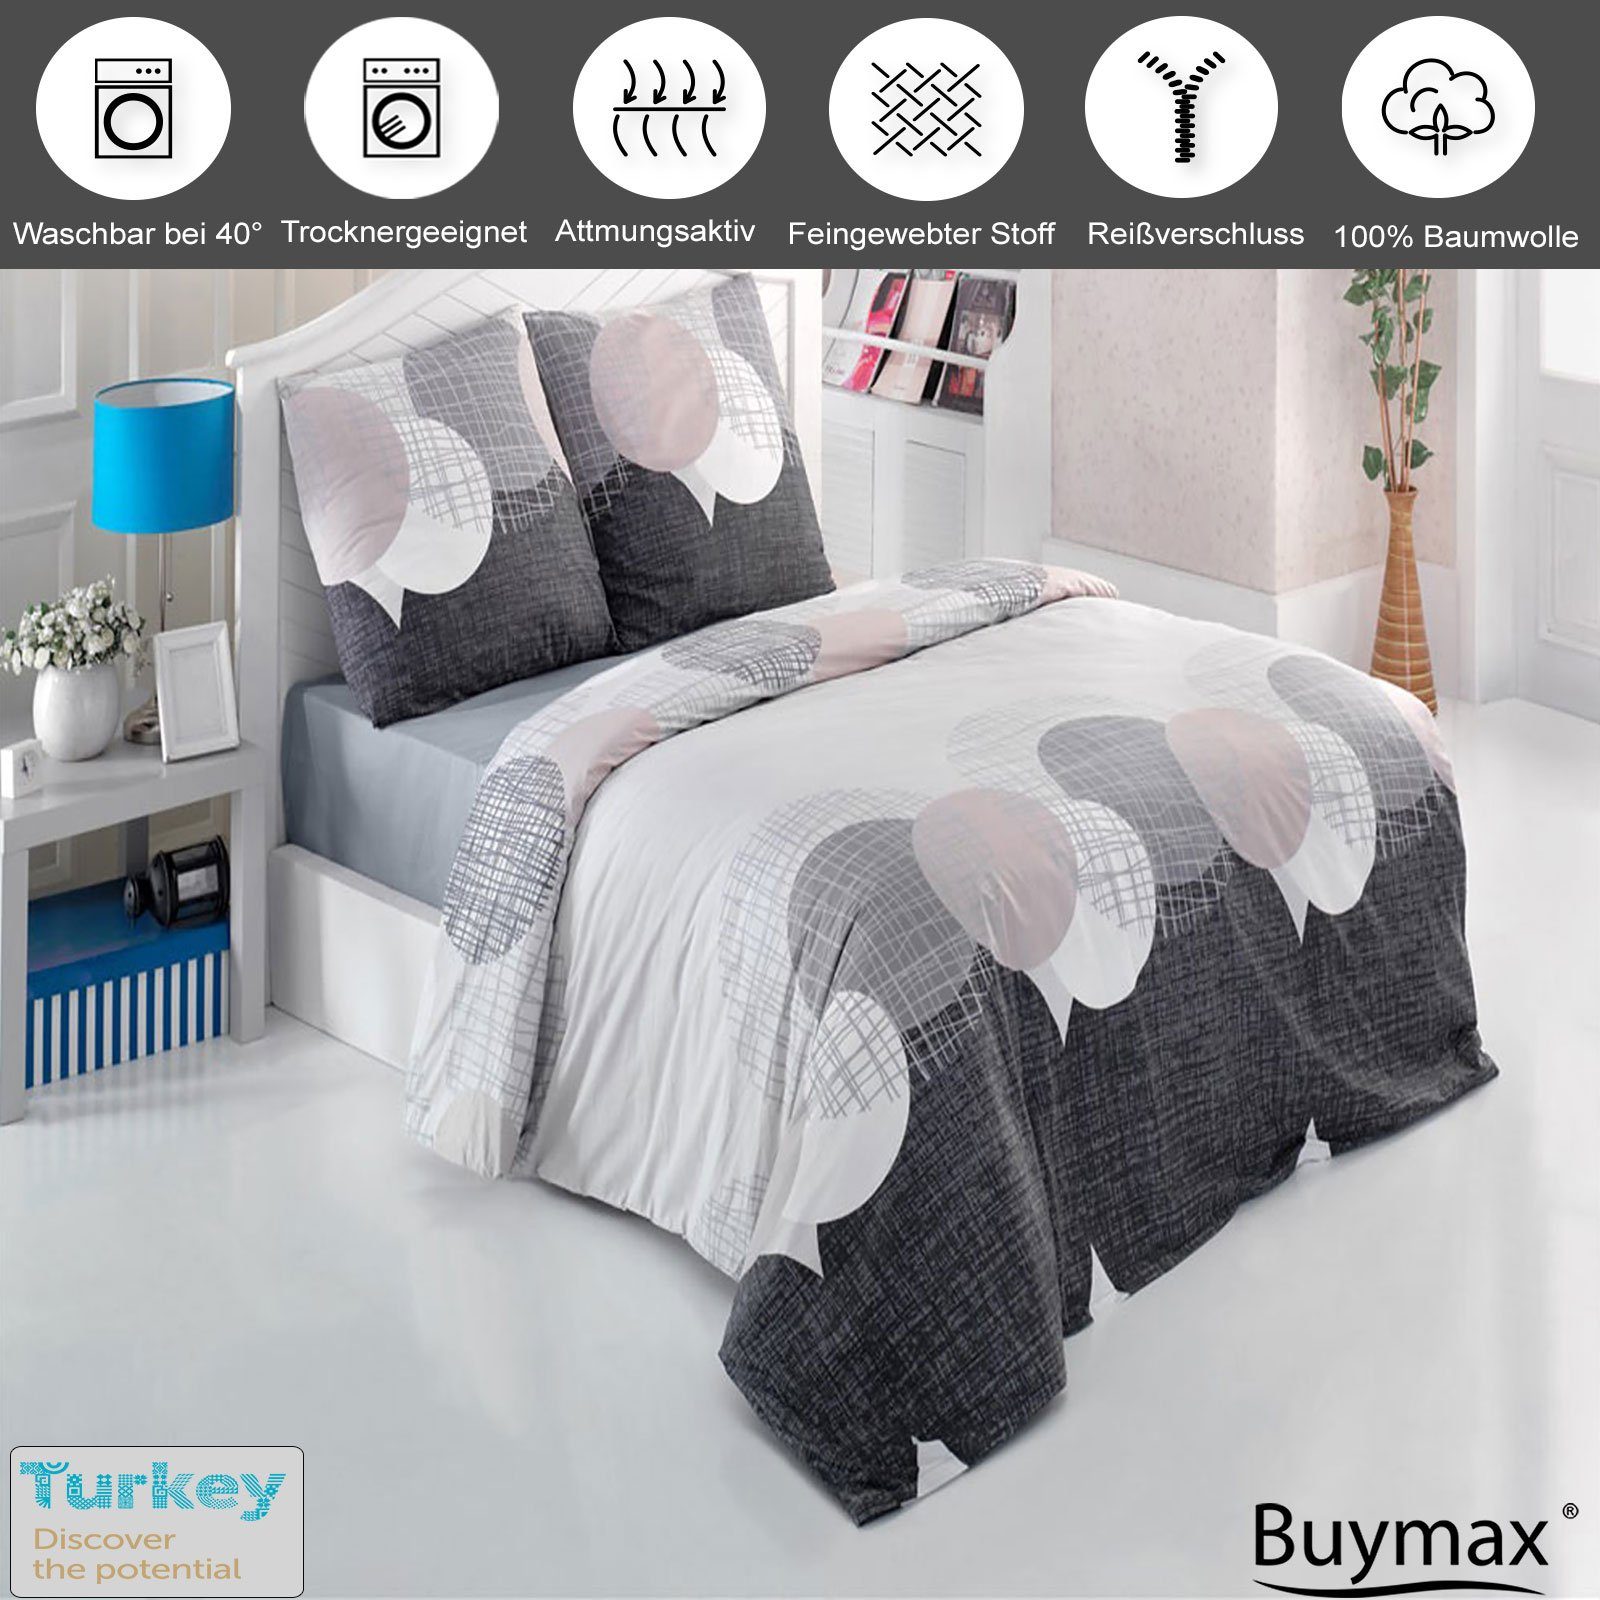 Bettwäsche, Buymax, Renforcé, 3 teilig, Bettbezug-Set 200x220 cm 100% Baumwolle Reißverschluss Grau Anthrazit